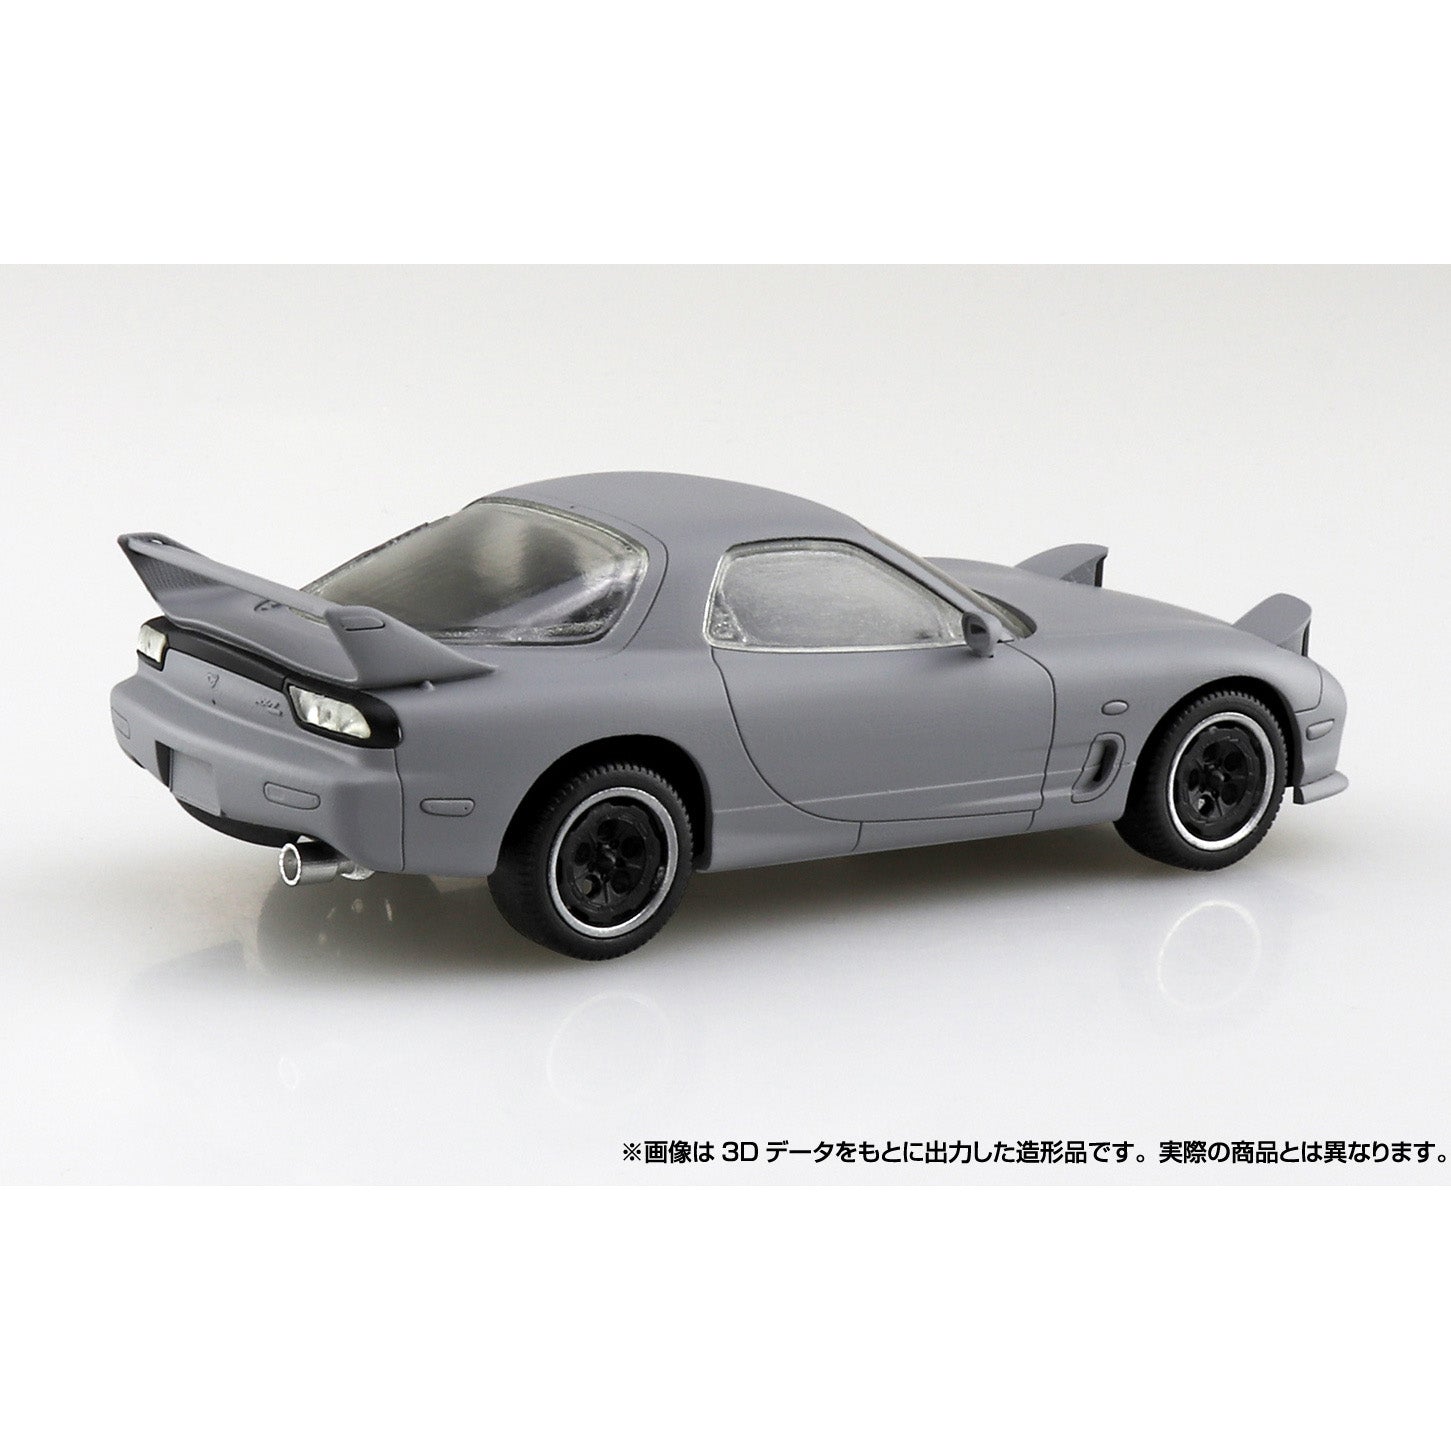 Aoshima - The Snap Kit No. CM2 - Initial D - Keisuke Takahashi&#39;s FD Model Kit (1/32 Scale) - Marvelous Toys